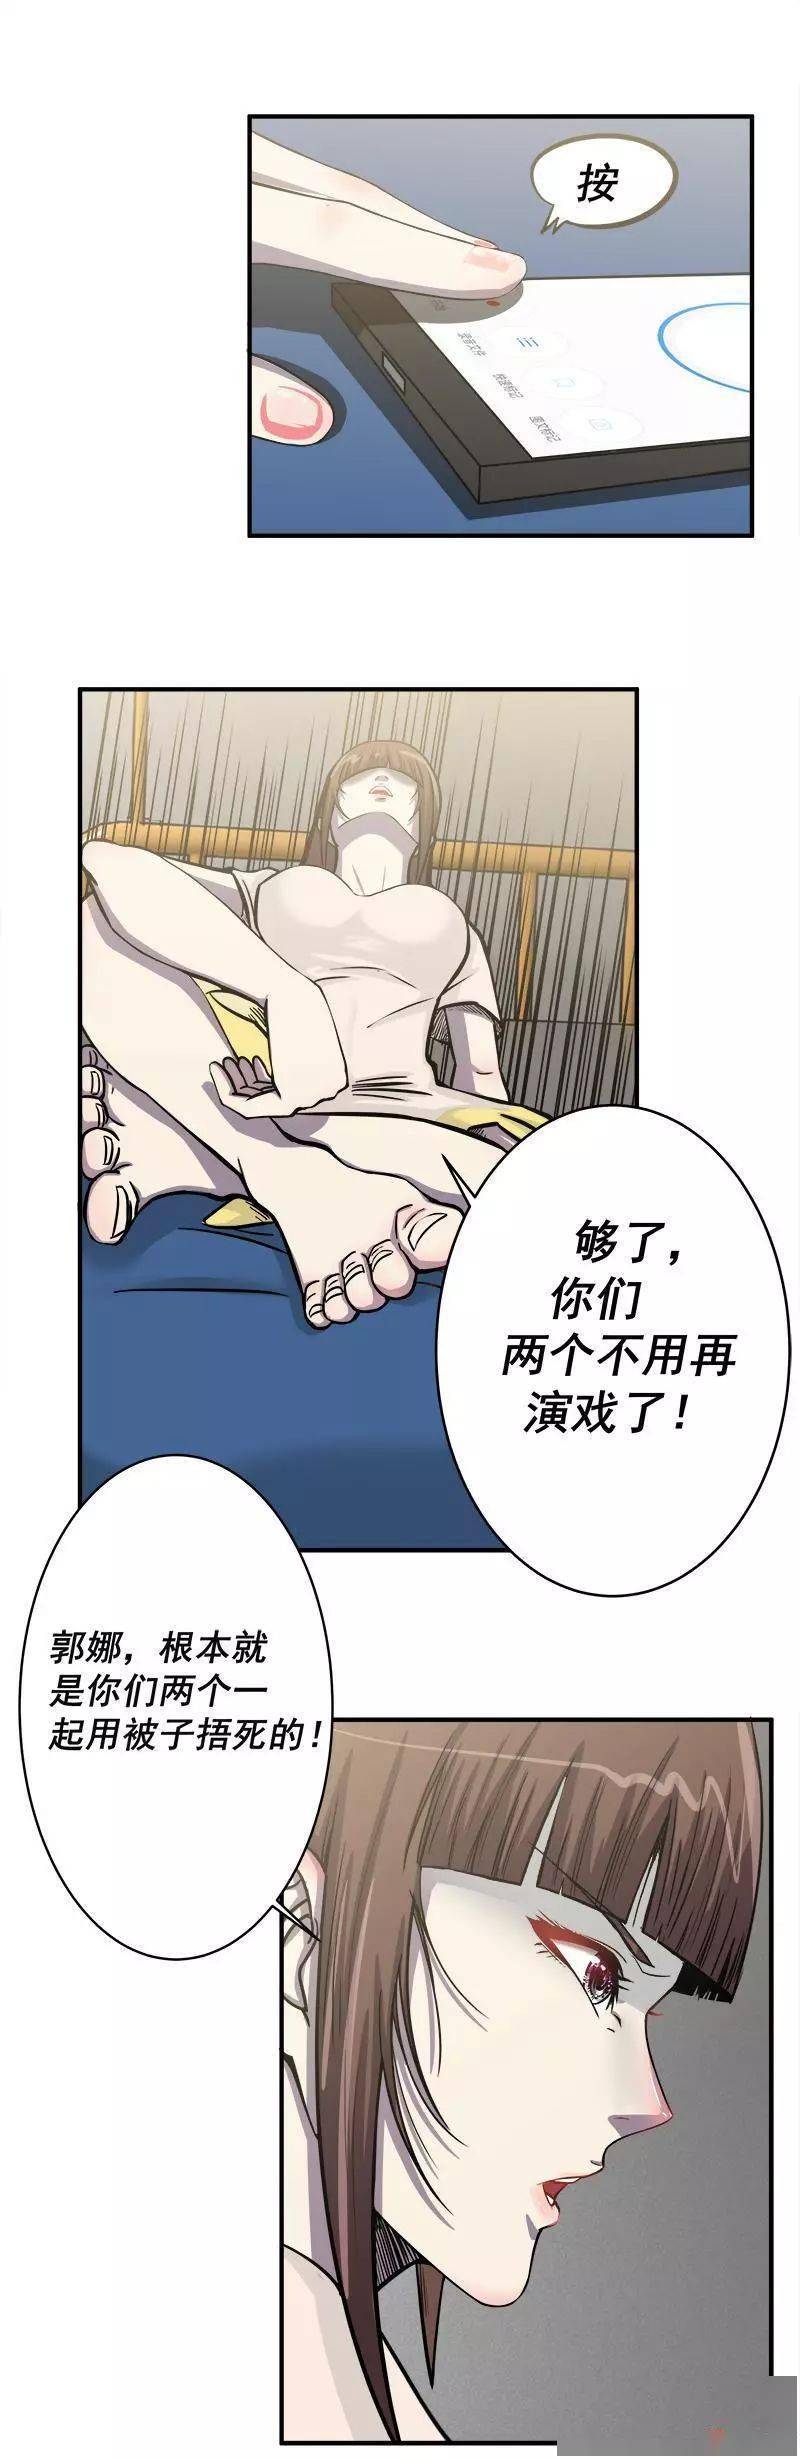 扑飞漫画:寝室迷局